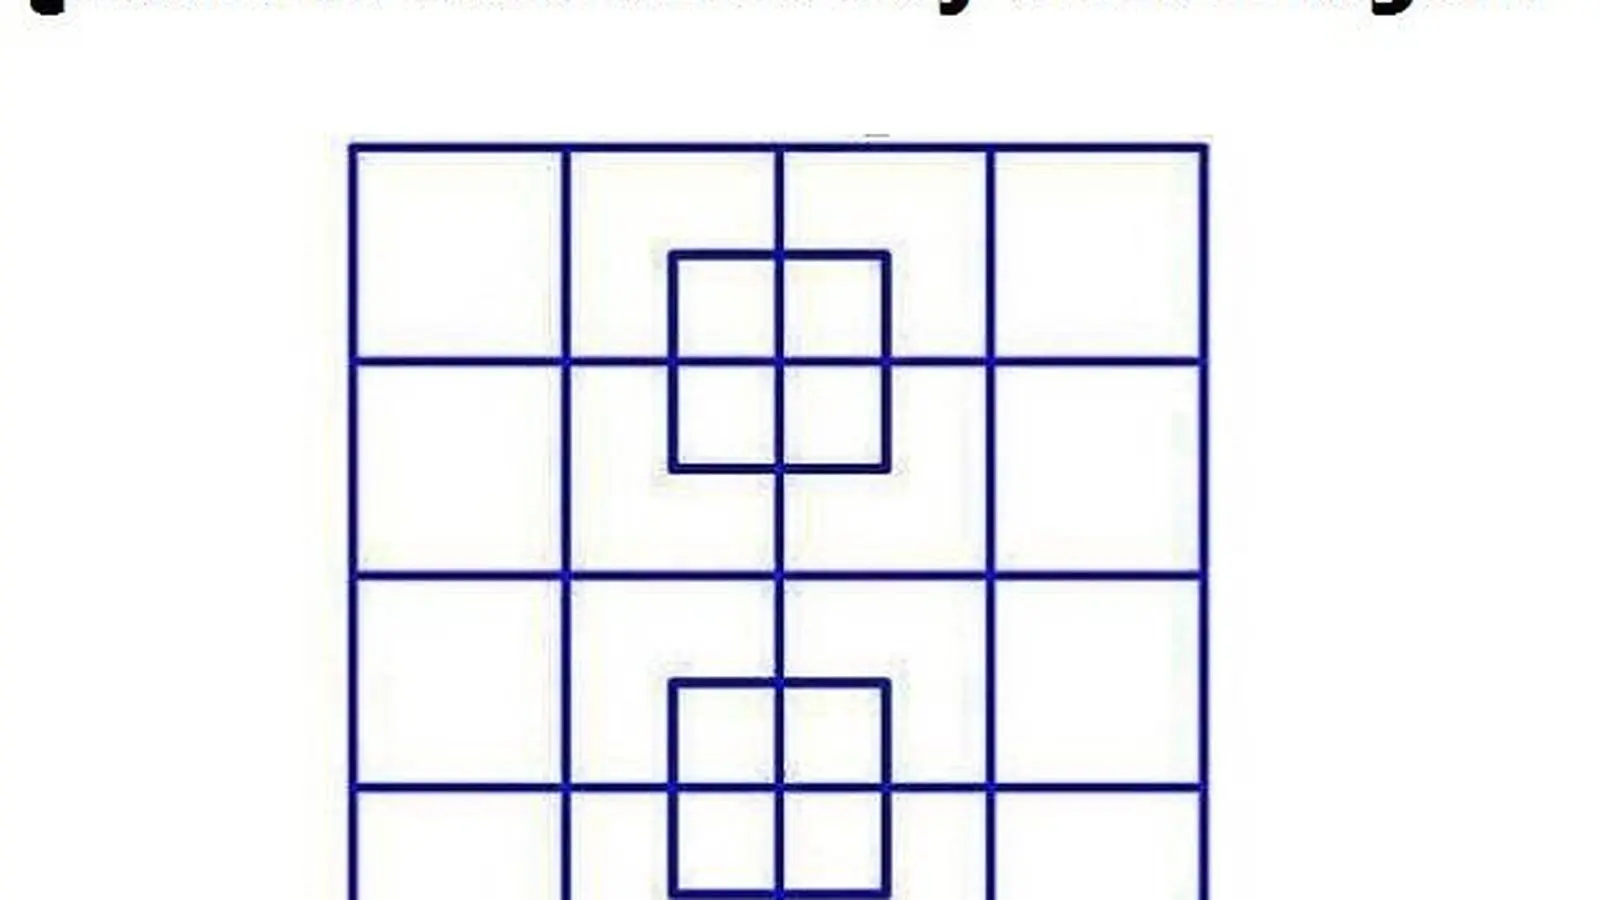 juego del cuadrado - Cómo se llama el juego de Geometry Dash